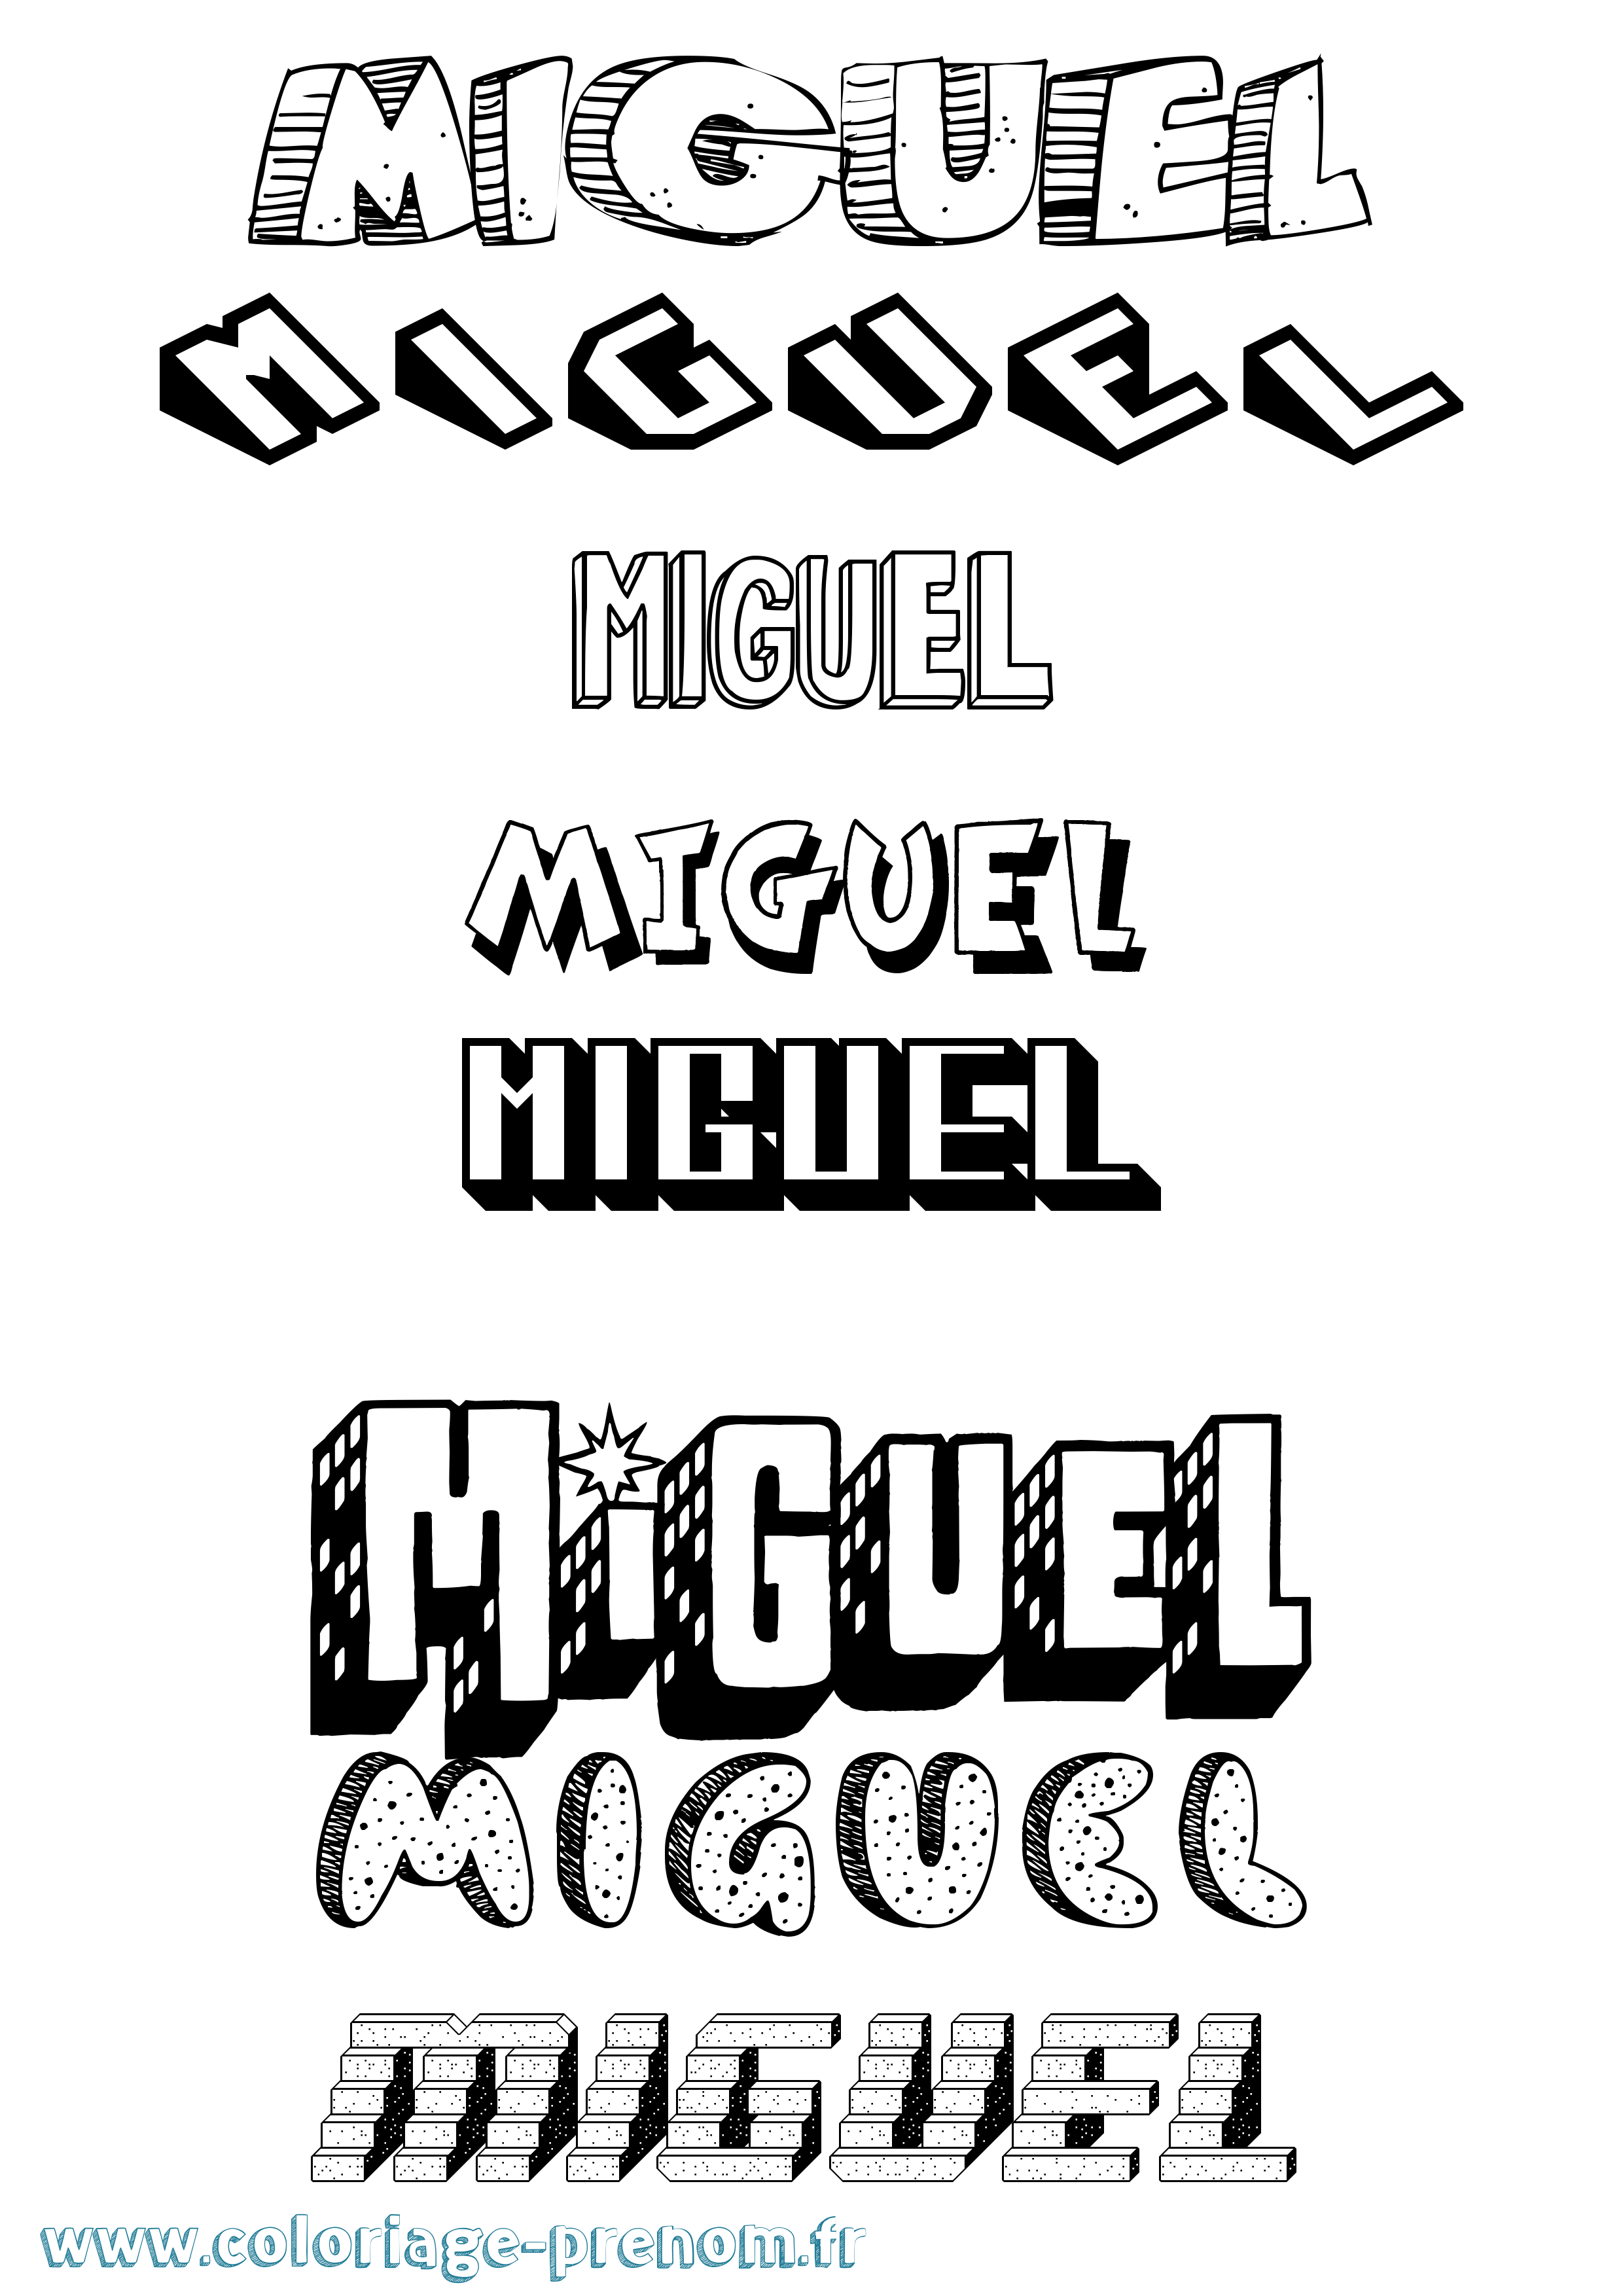 Coloriage prénom Miguel Effet 3D